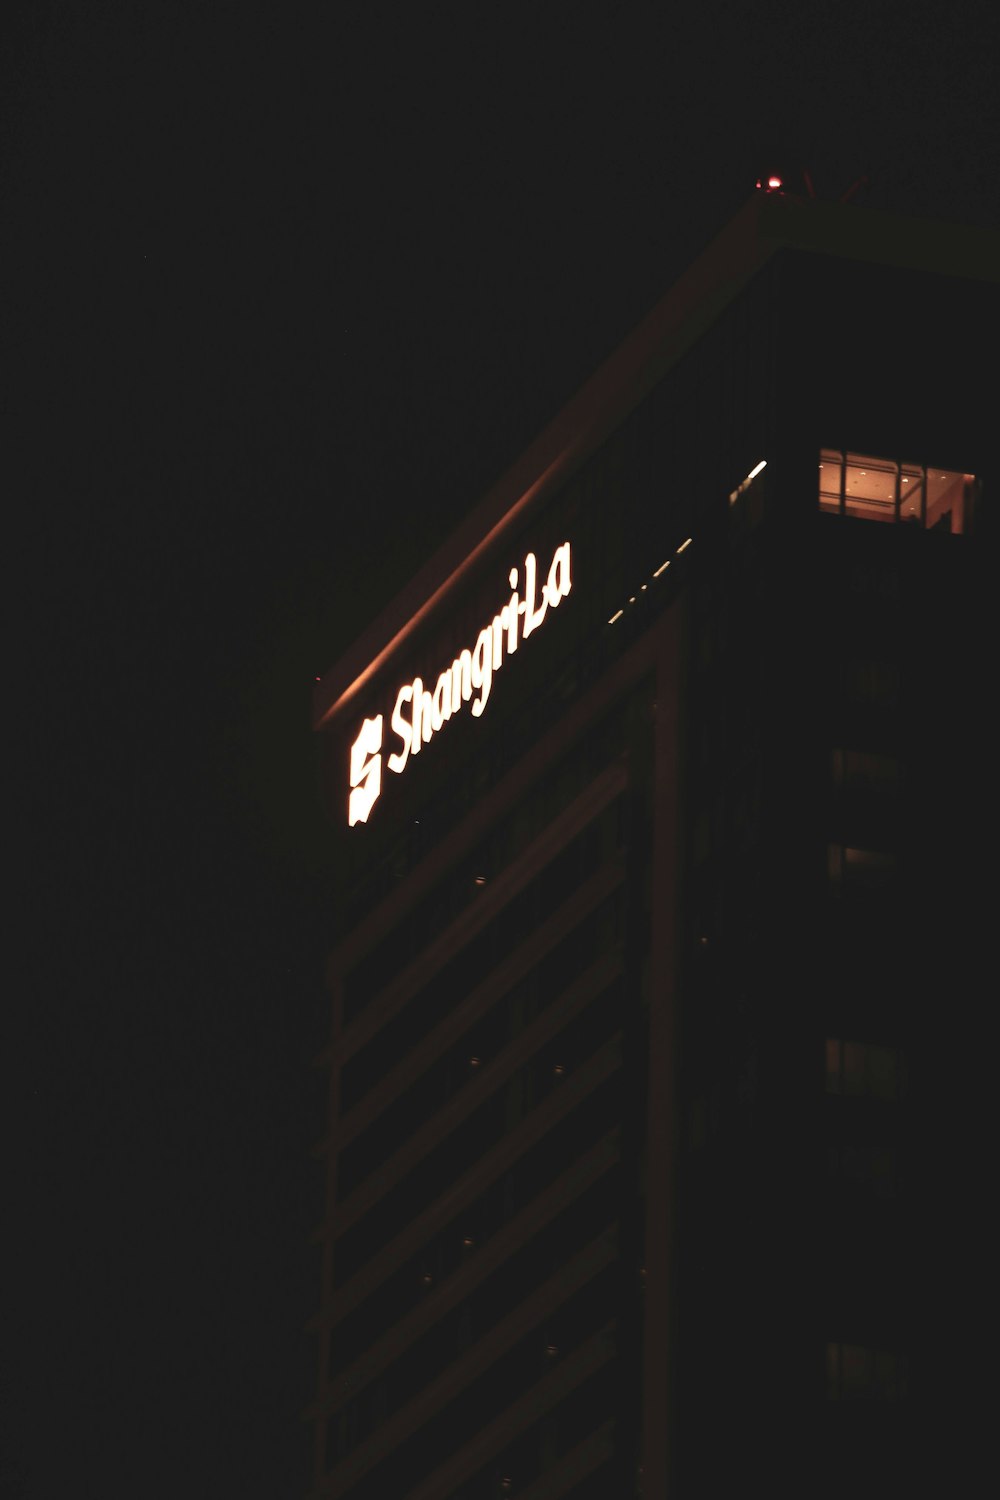 Un edificio alto con un letrero iluminado en la parte superior